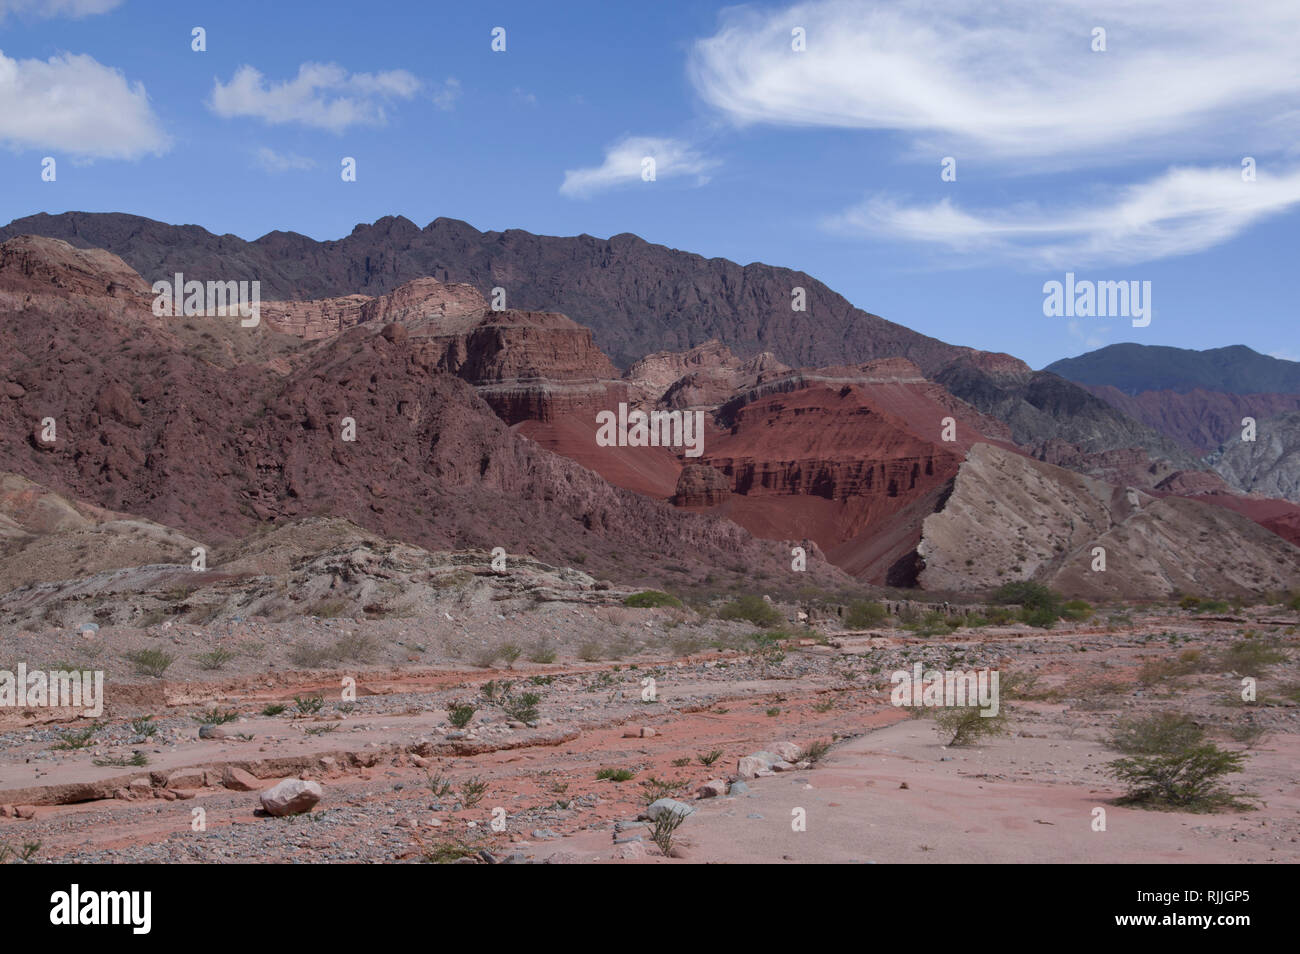 El llamativo hermoso paisaje desértico en el norte de Argentina, cerca de Salta y Juyjuy con mesetas de arenisca roja ríos y coloridos cerros Foto de stock